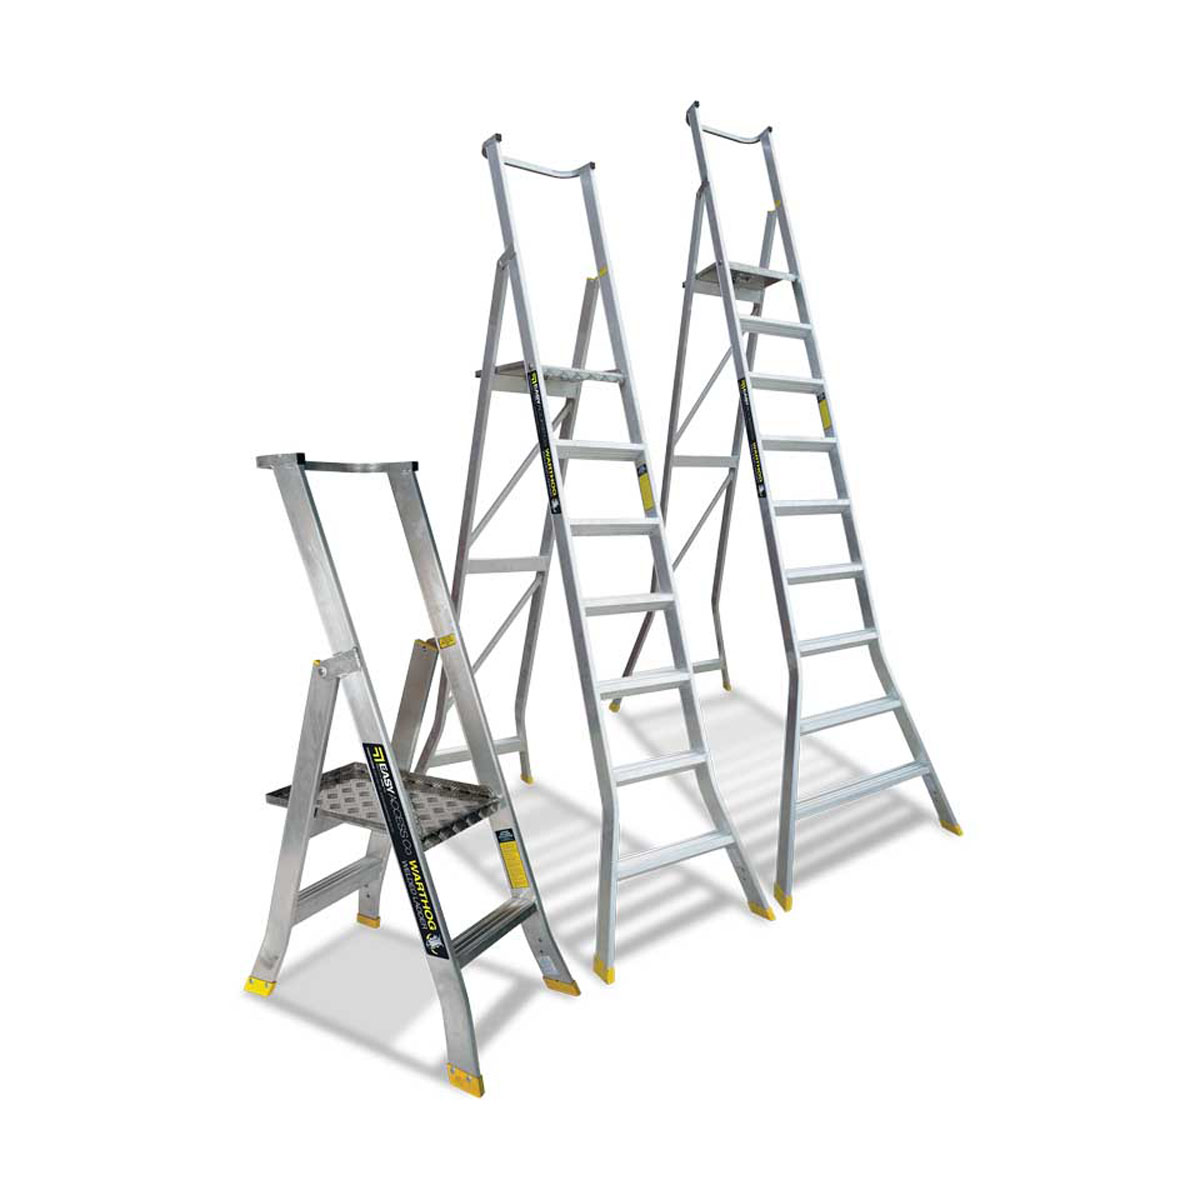 Platform Ladders - Heavy-Duty